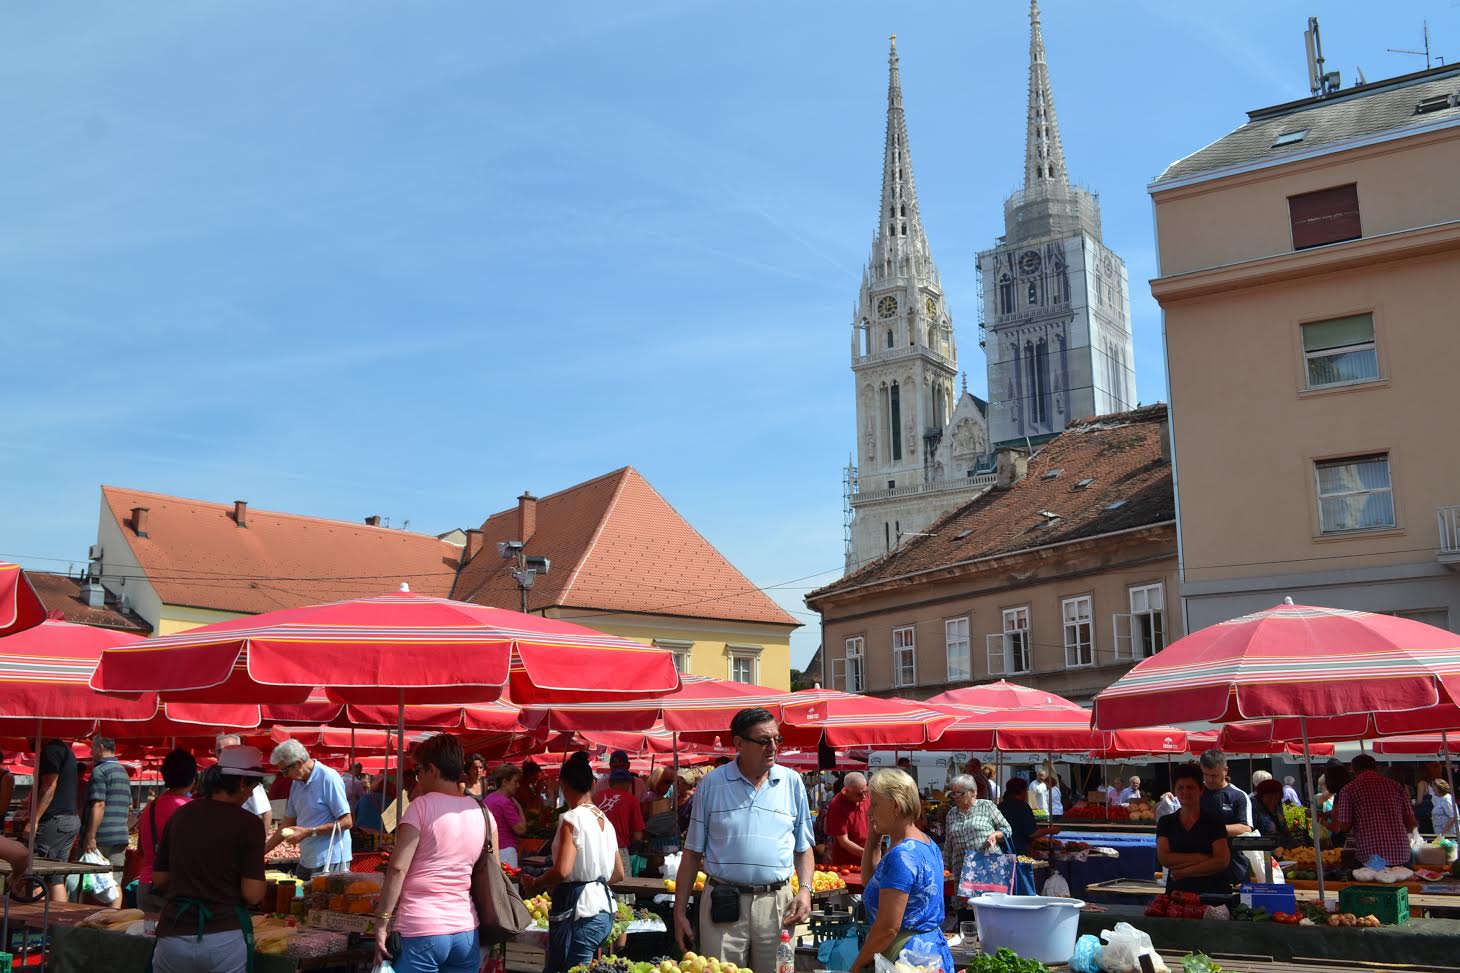 Dolac Farmers Market - Zagreb